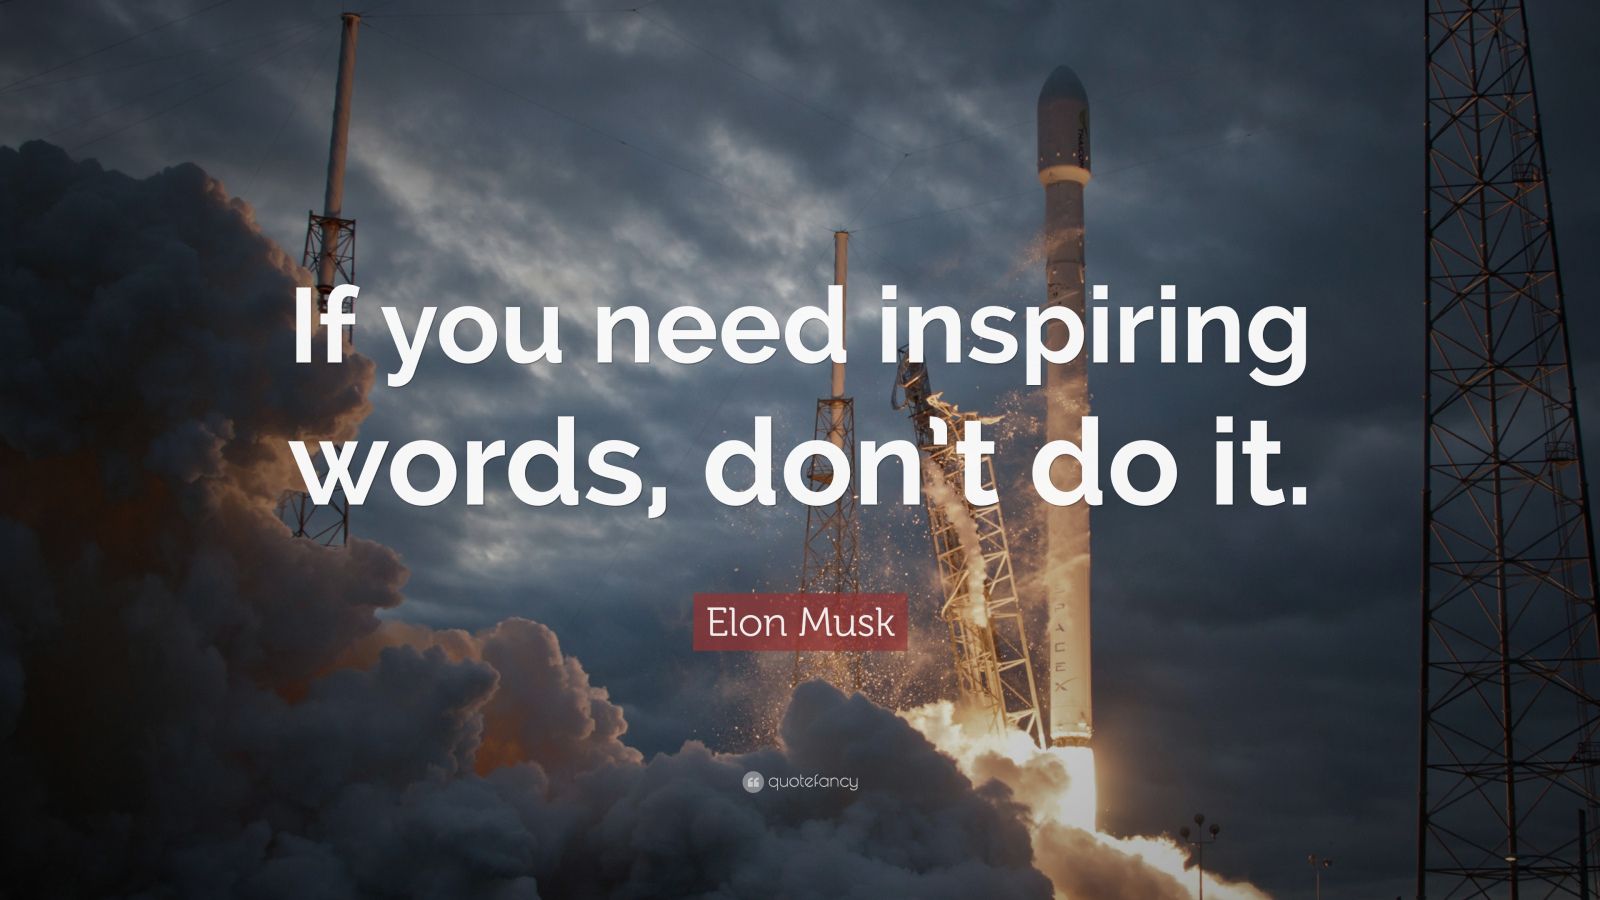 Elon Musk Quotes 100 Wallpapers Quotefancy